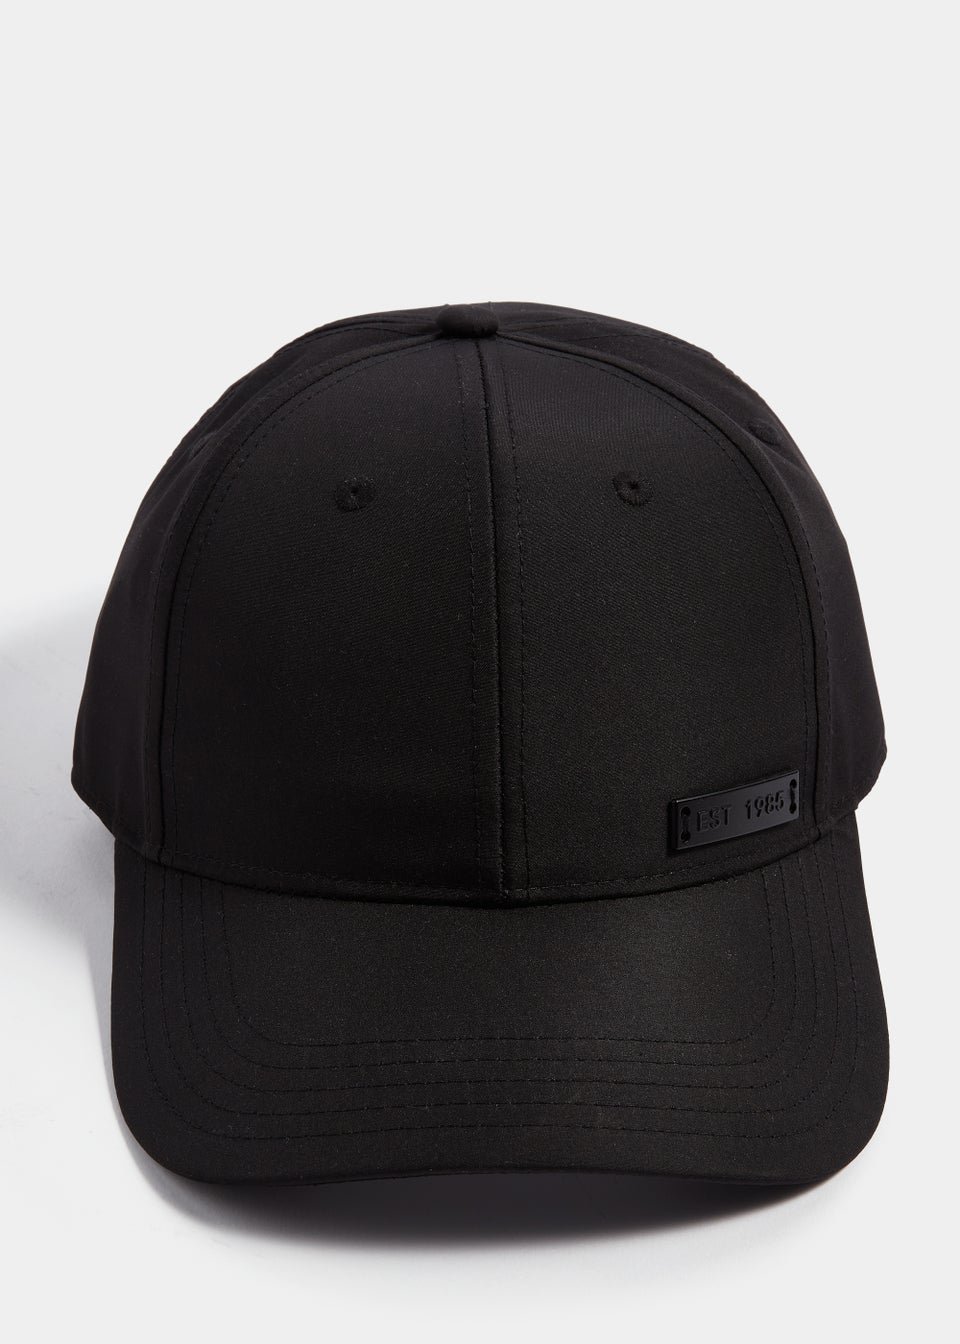 US Athletic Black Dry Cap